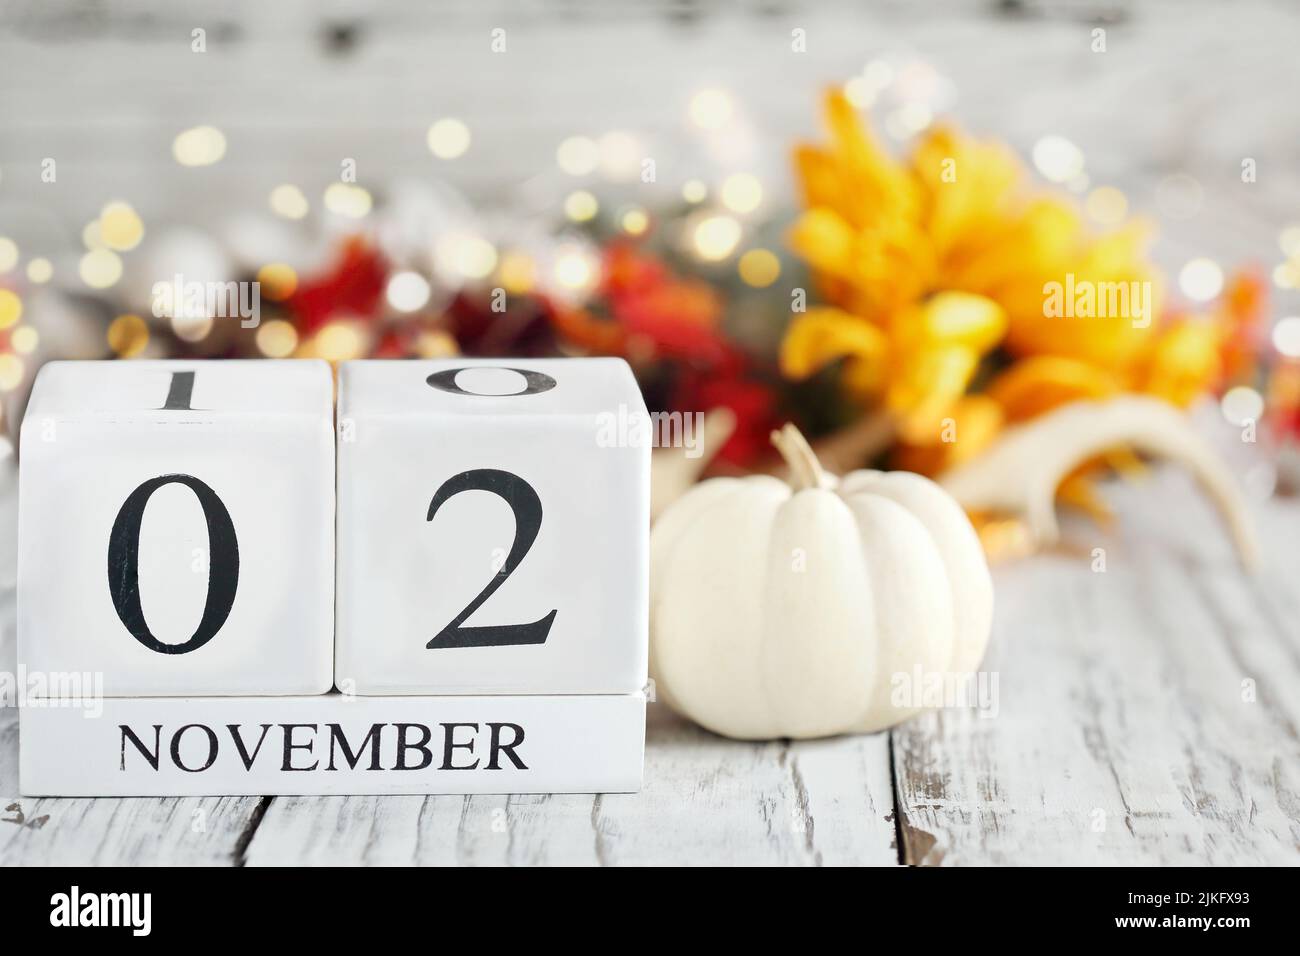 Bloques de madera blanca calendario con la fecha de noviembre de 2nd y decoraciones otoñales sobre una mesa de madera. Enfoque selectivo con fondo borroso. Foto de stock